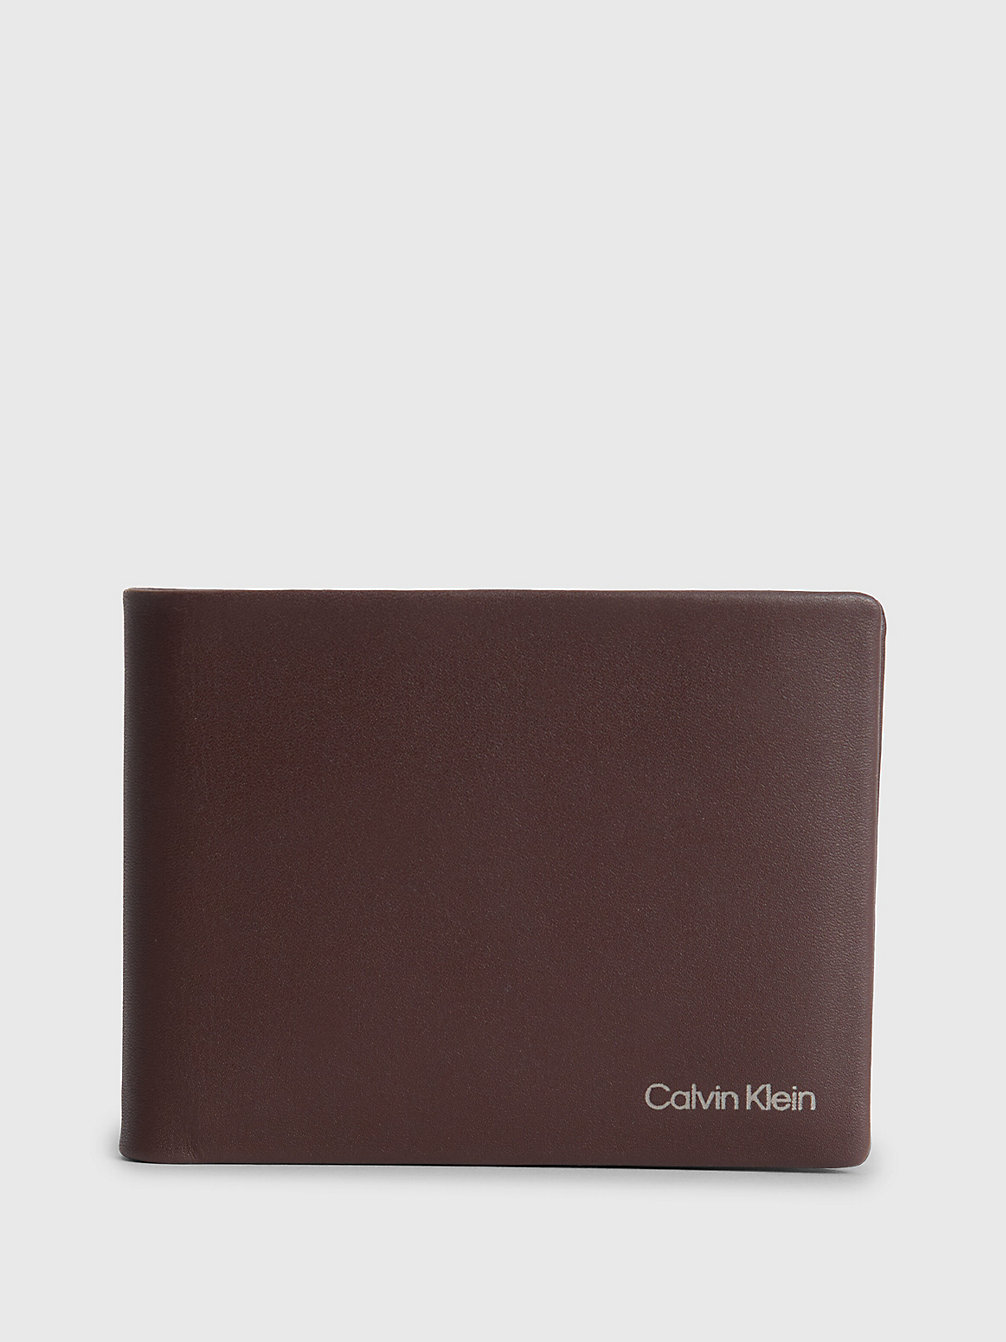 DARK BROWN SLG Leather Rfid Billfold Wallet undefined men Calvin Klein